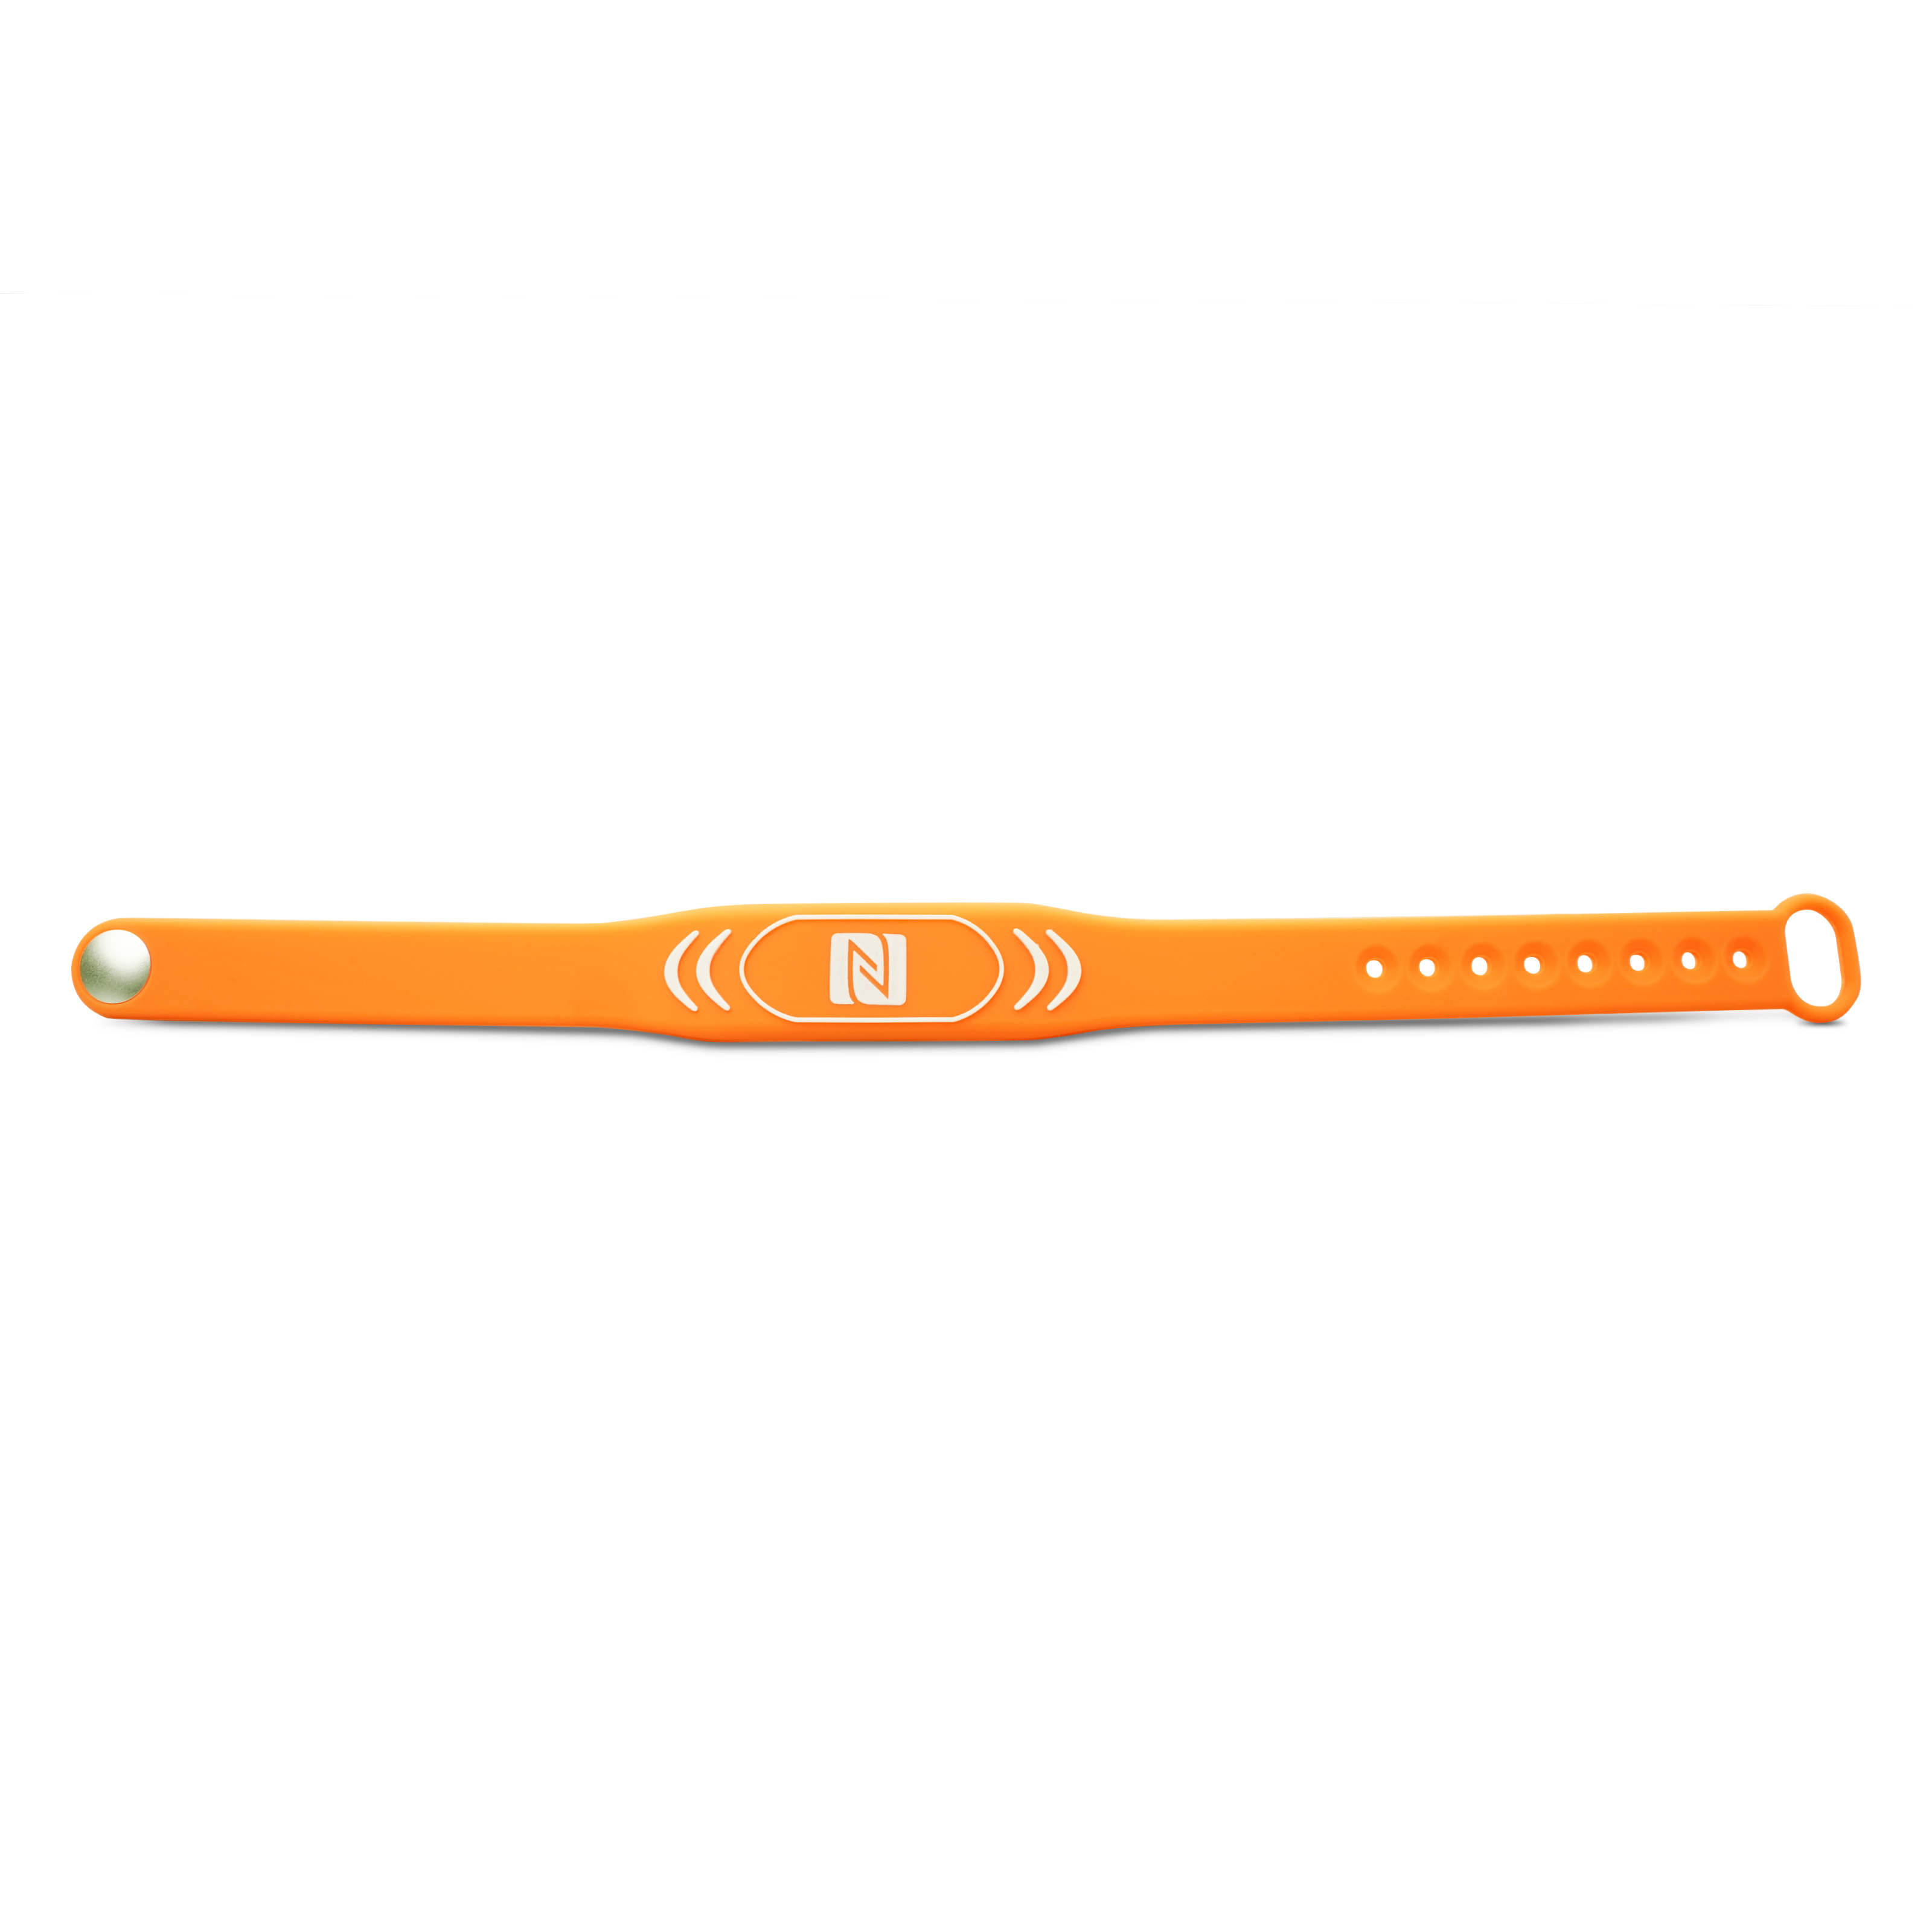 Vorderseite des NFC Armband in orange